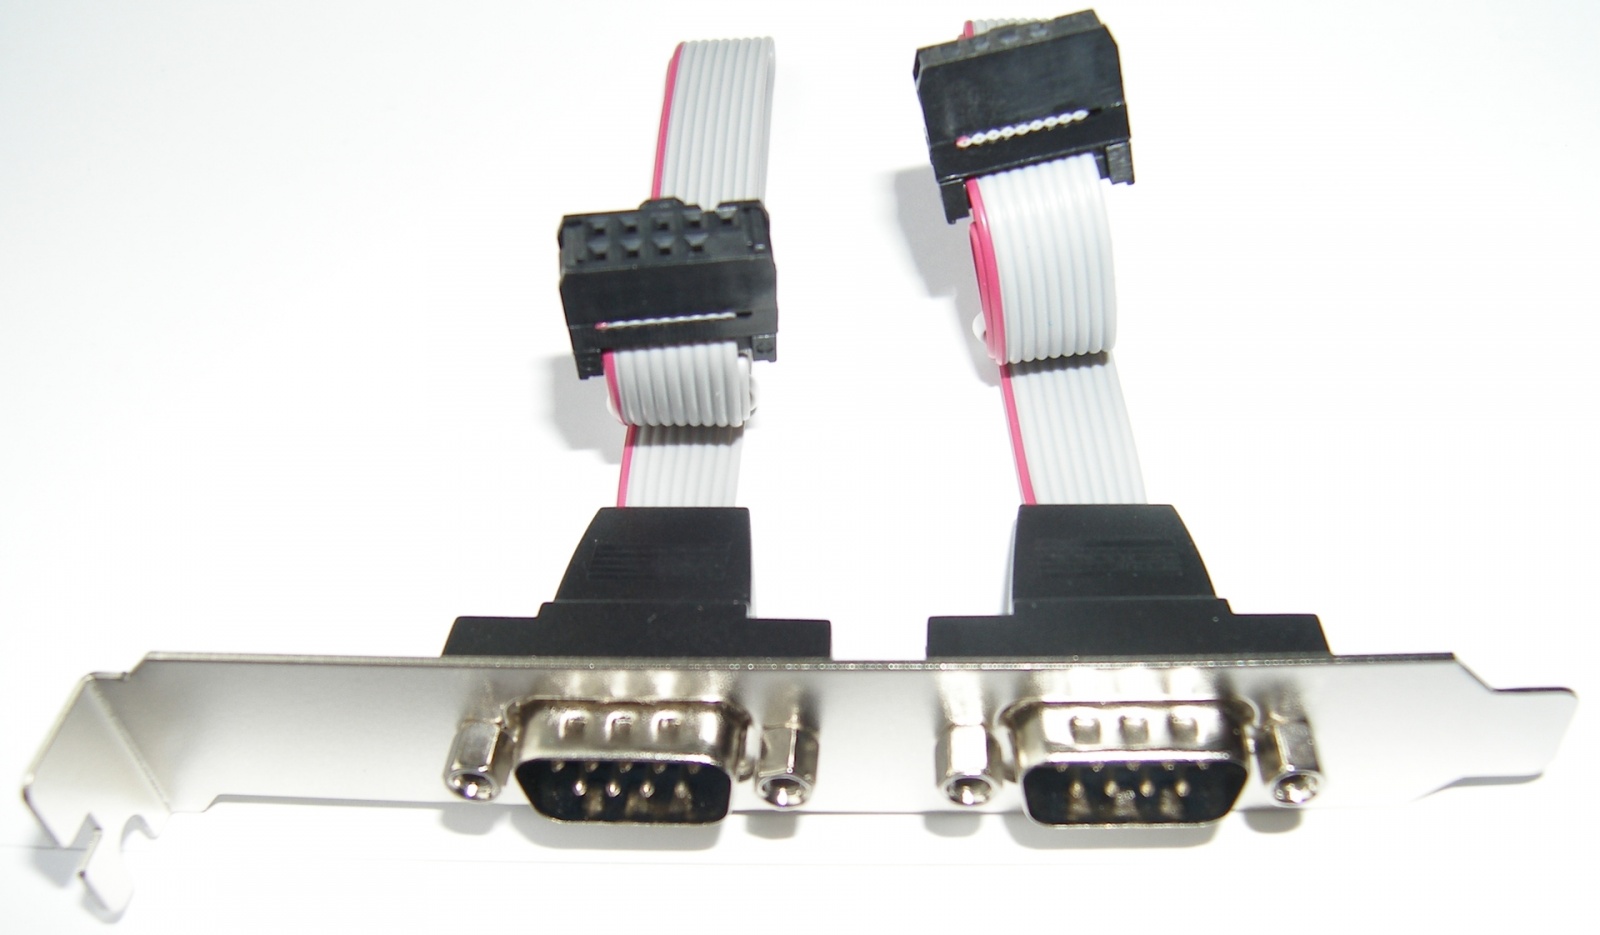 Адаптеры сопряжения RS-422 с поддержкой скоростей до 1Мбод для системной шины PCI - 8